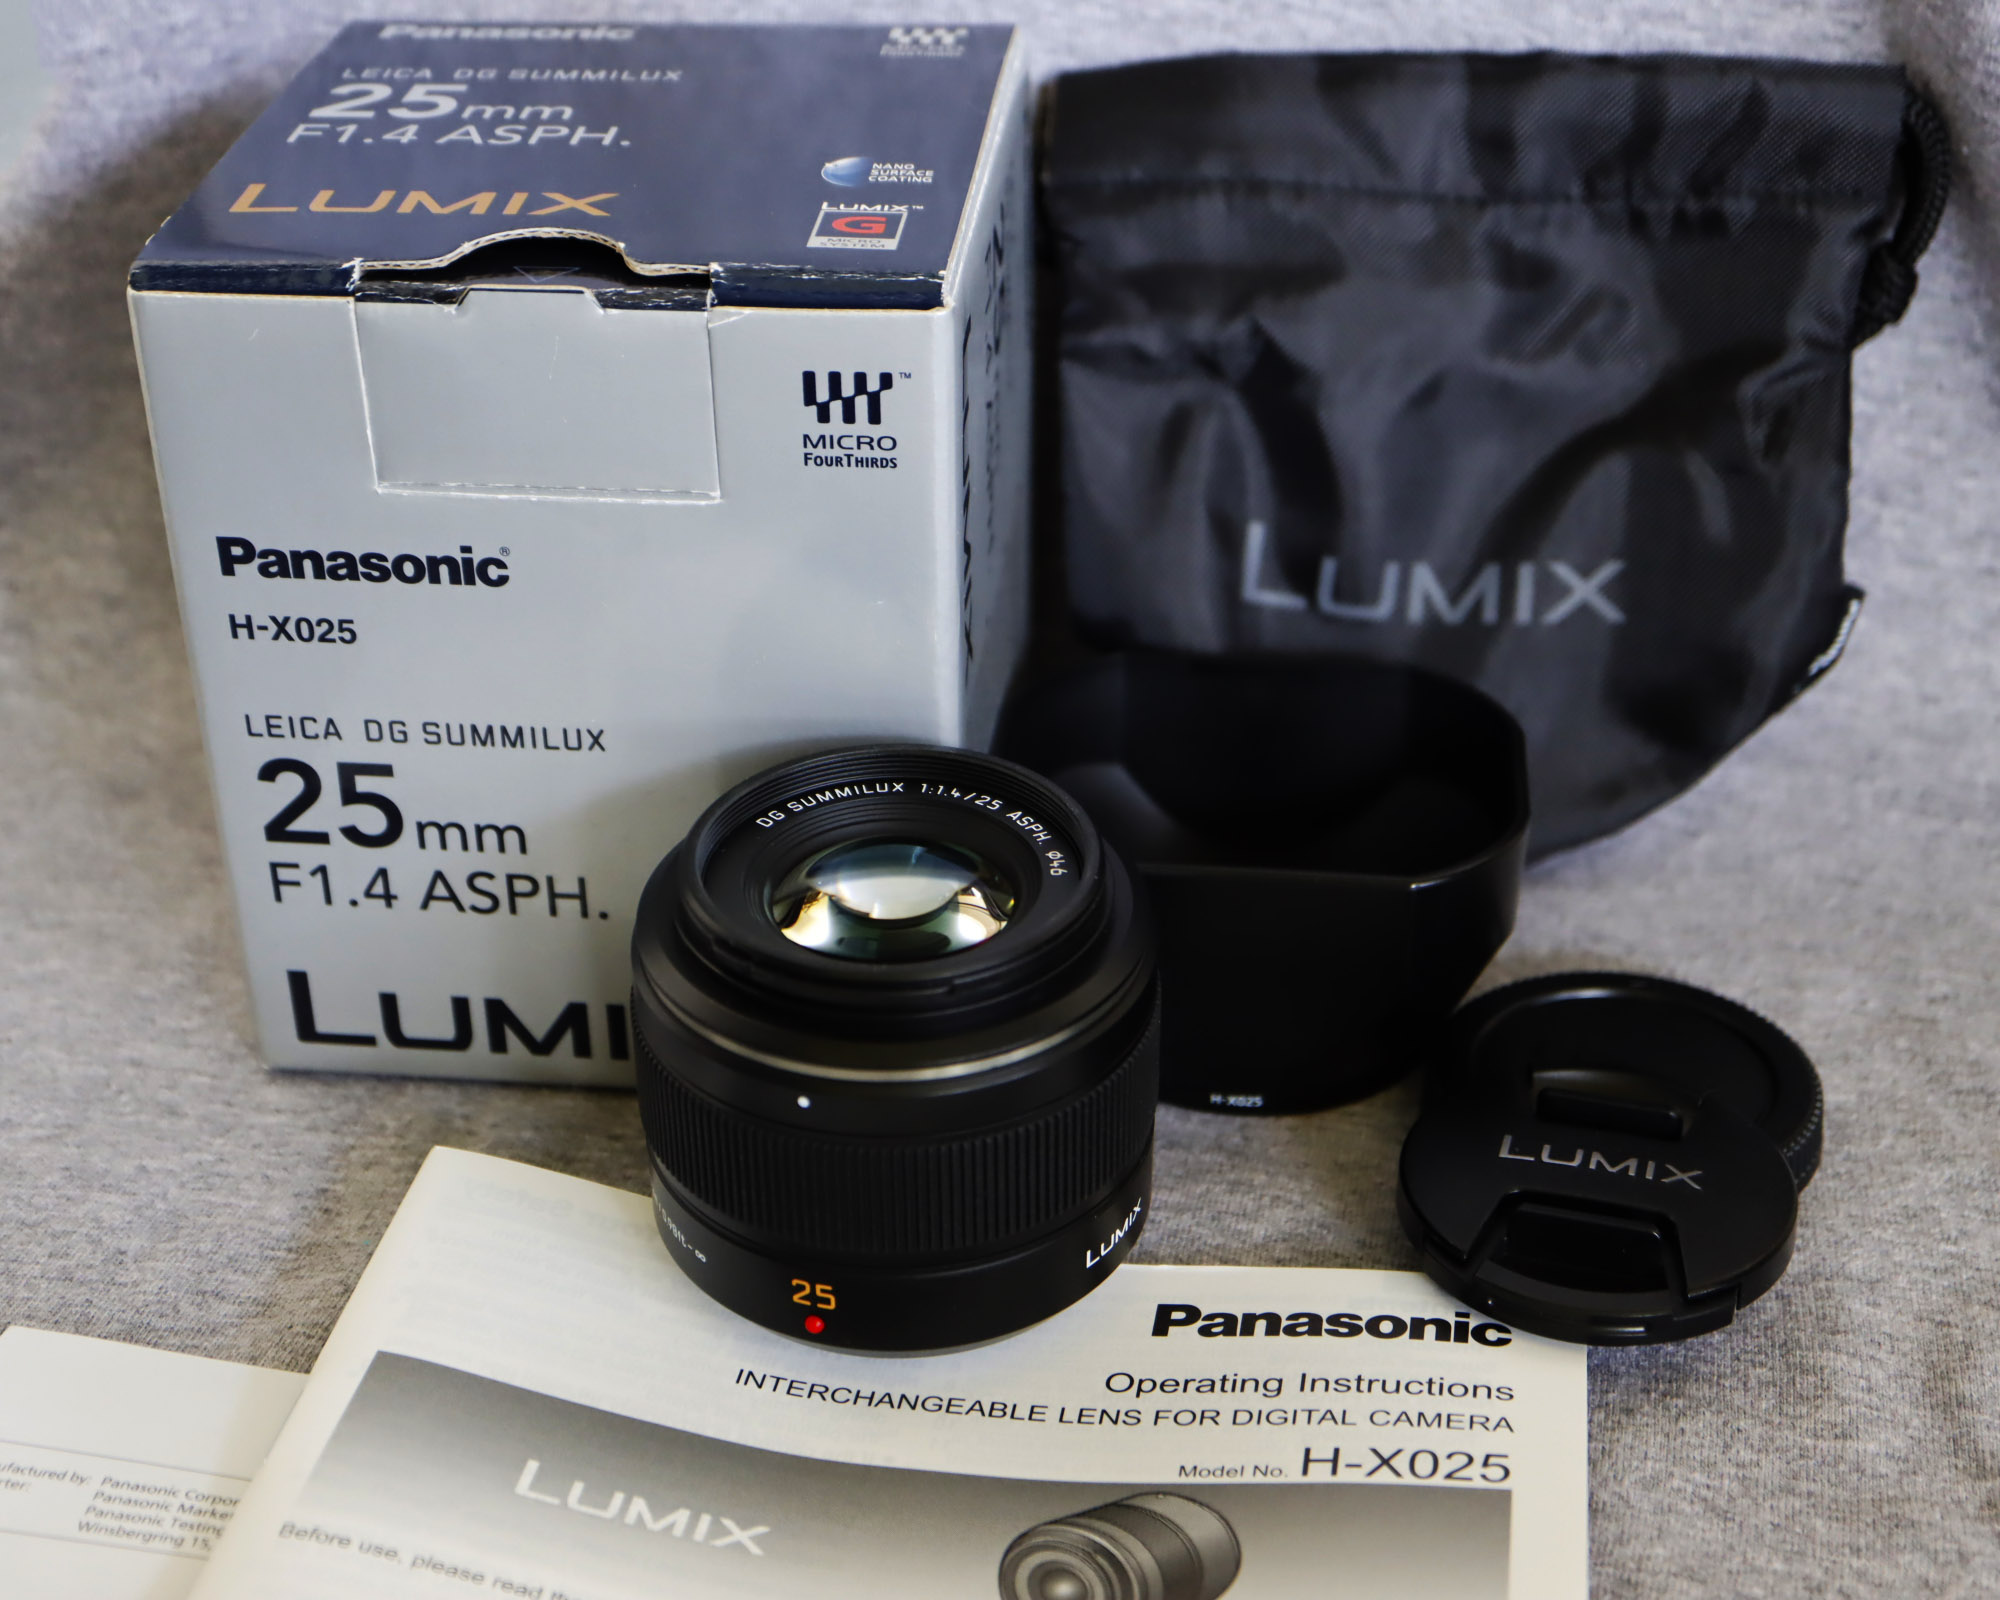 Panasonic LUMIX G Leica 25mm f/1.4 สามารถถ่ายได้แทบจะทุกอย่าง ตั้งแต่ Food  Landscape หรือจะ Portrait ก็พอได้ และด้วยการมาพร้อมค่ารูรับแสงที่ F1.4  ทำให้การถ่ายภาพในที่แสงน้อยนั้น ทำได้สะดวกยิ่งขึ้น  อีกข้อดีที่มีการบอกปากต่อปากกันมา คือ เลนส์รุ่นนี้ ...